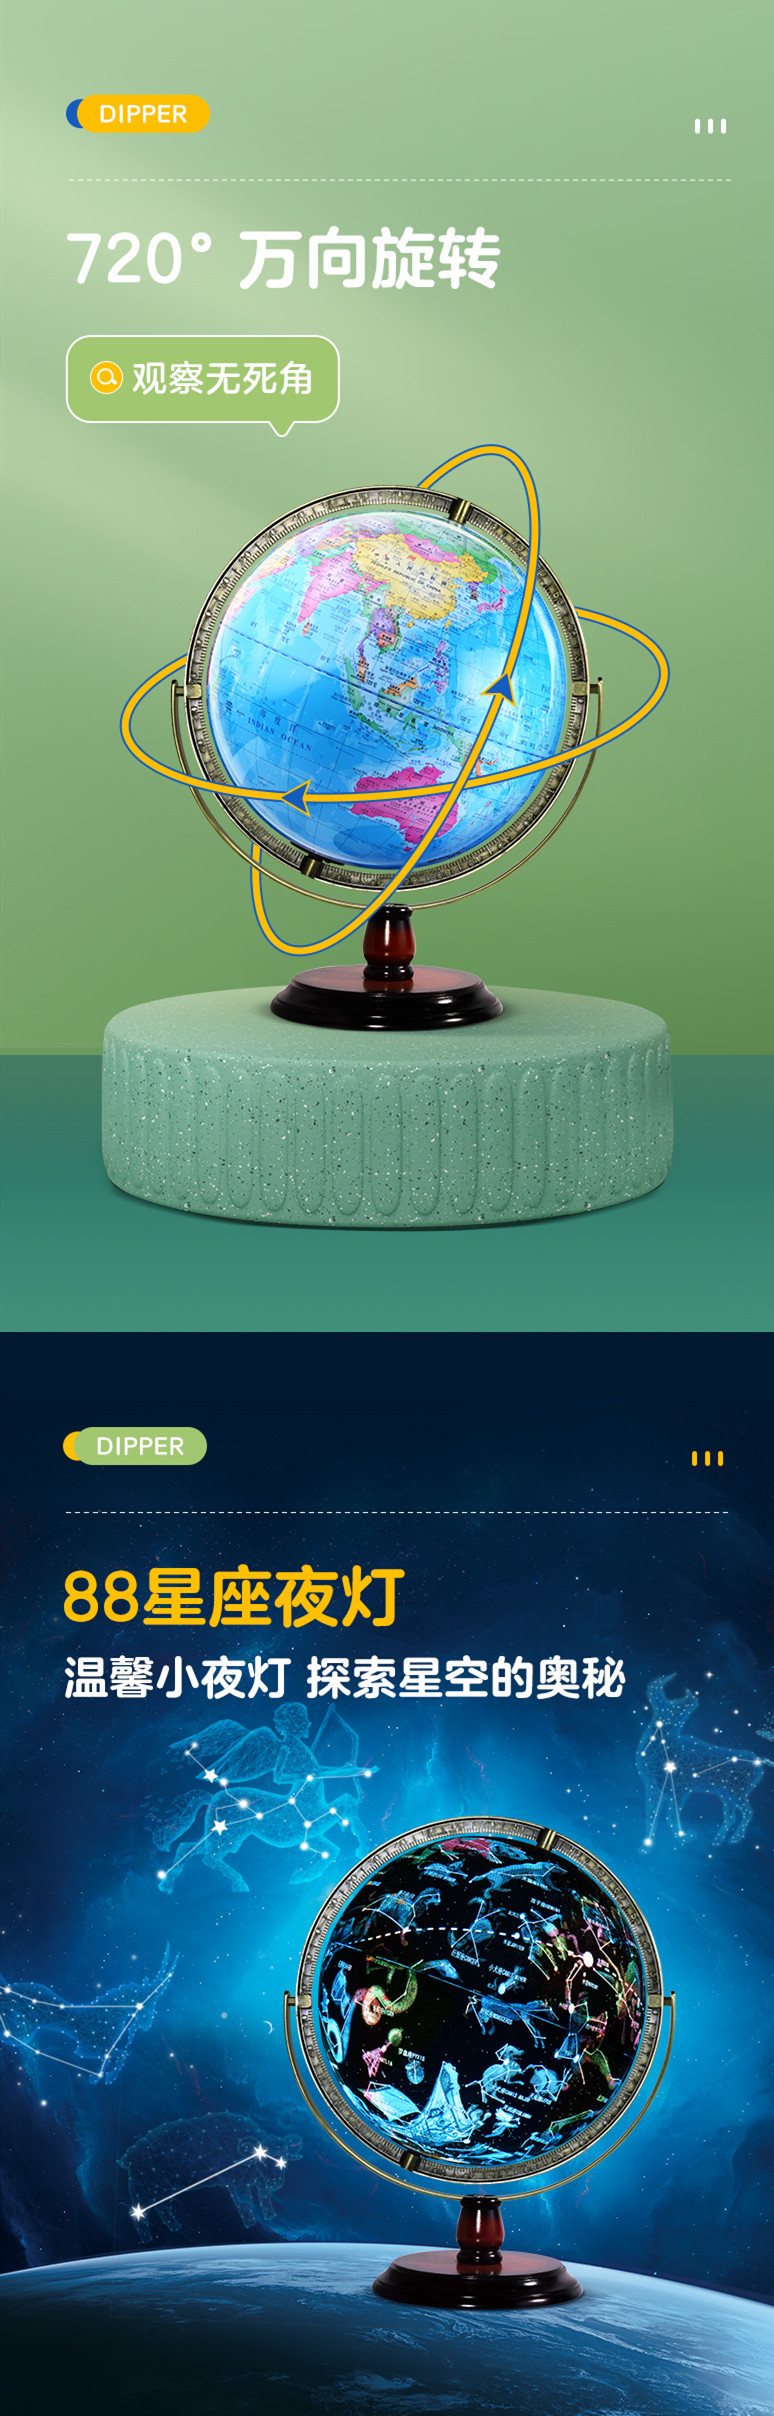 米乐|米乐·M6(China)官方网站_产品9694